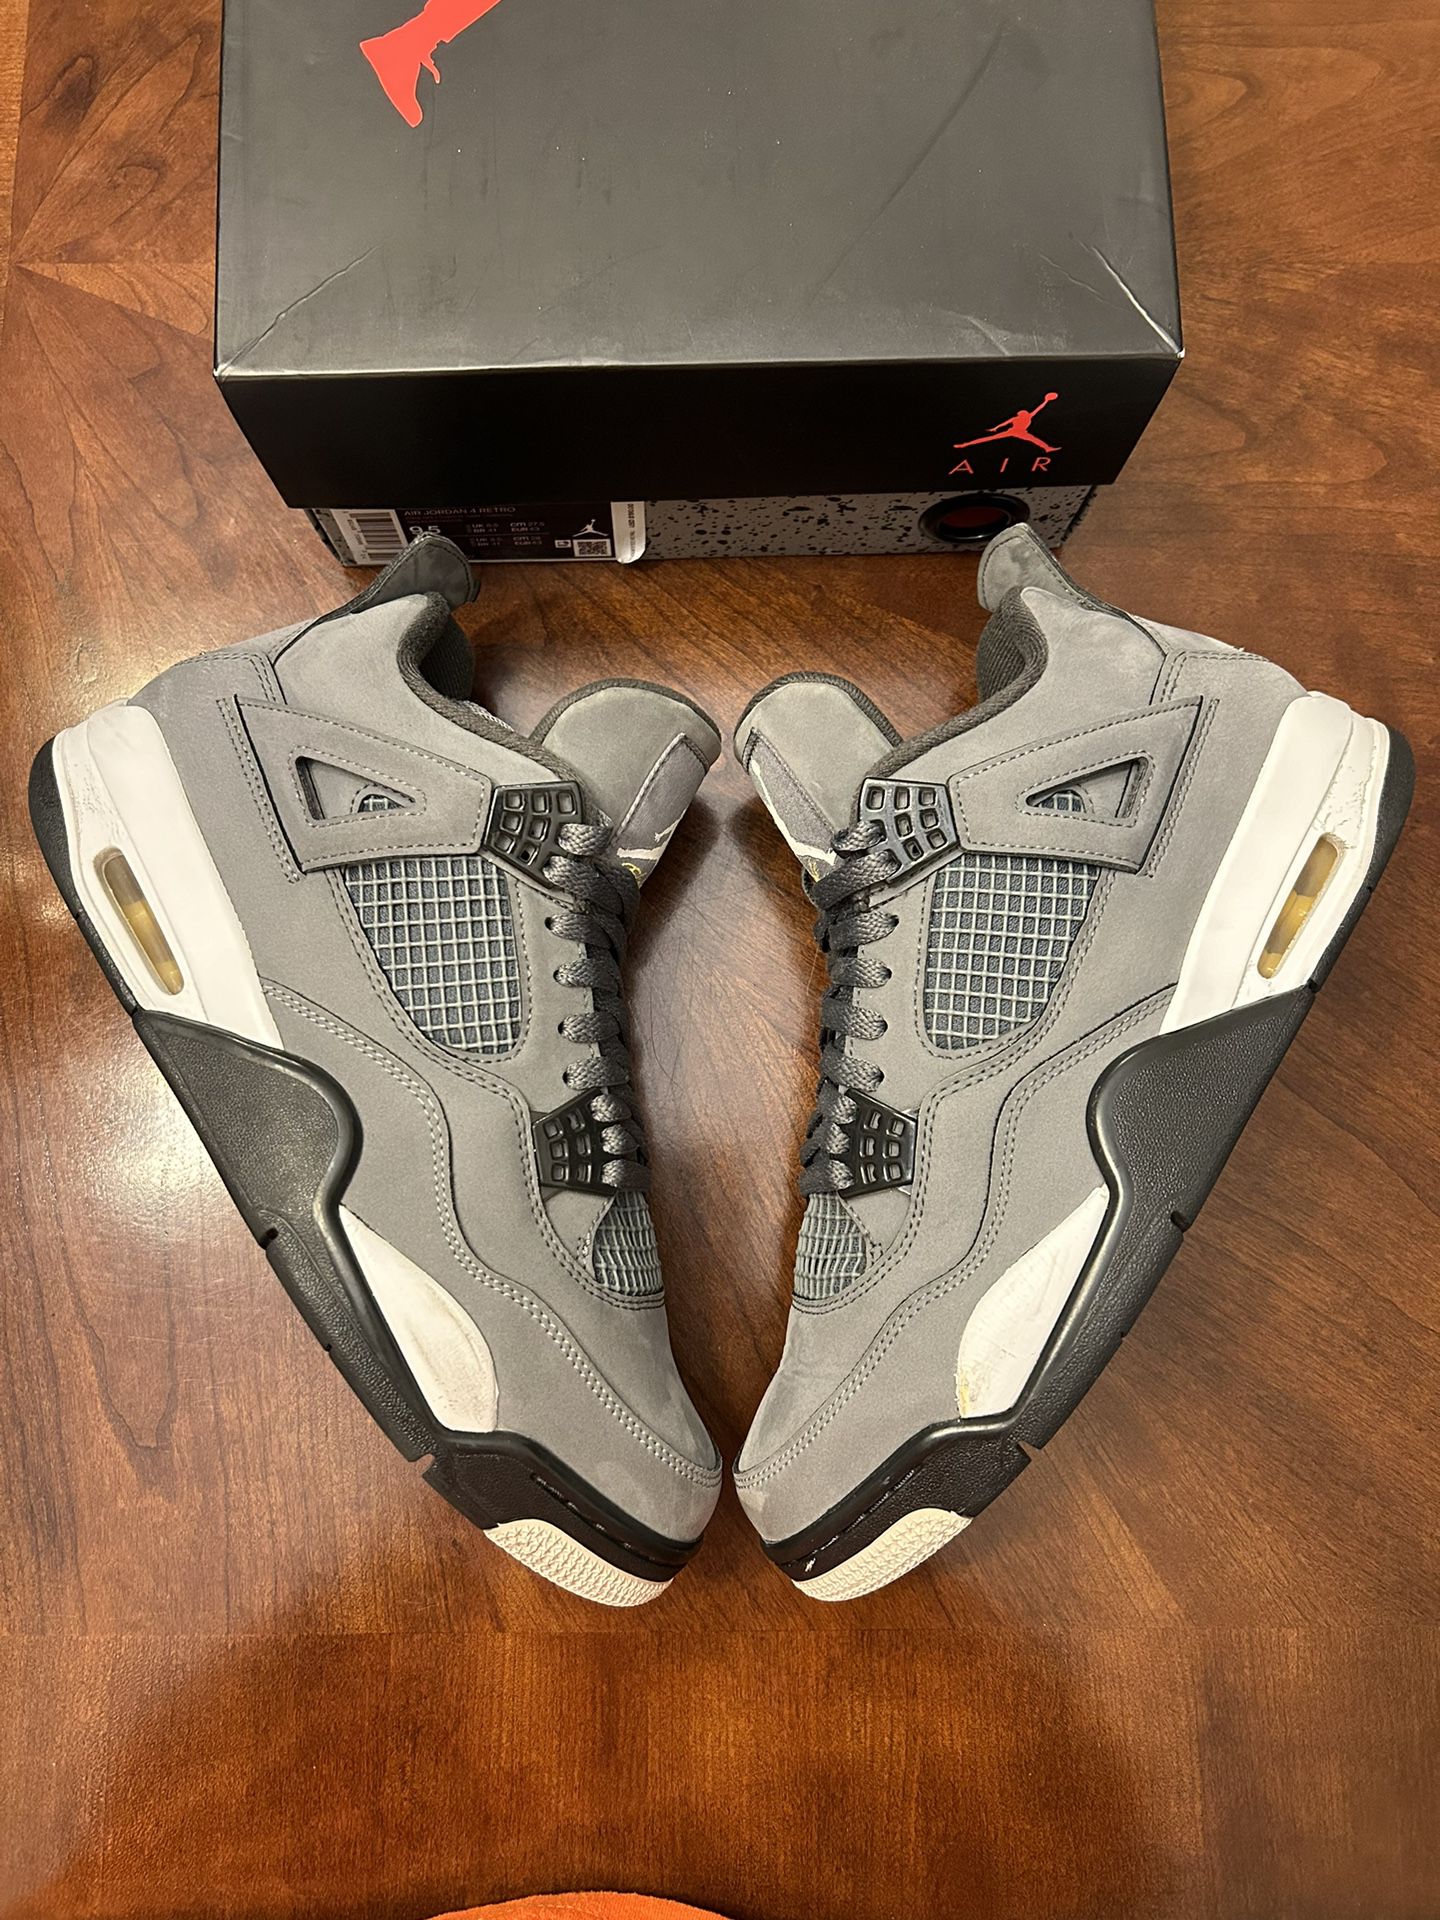 Jordan 4 “Cool Grey” Size 9.5 Og All